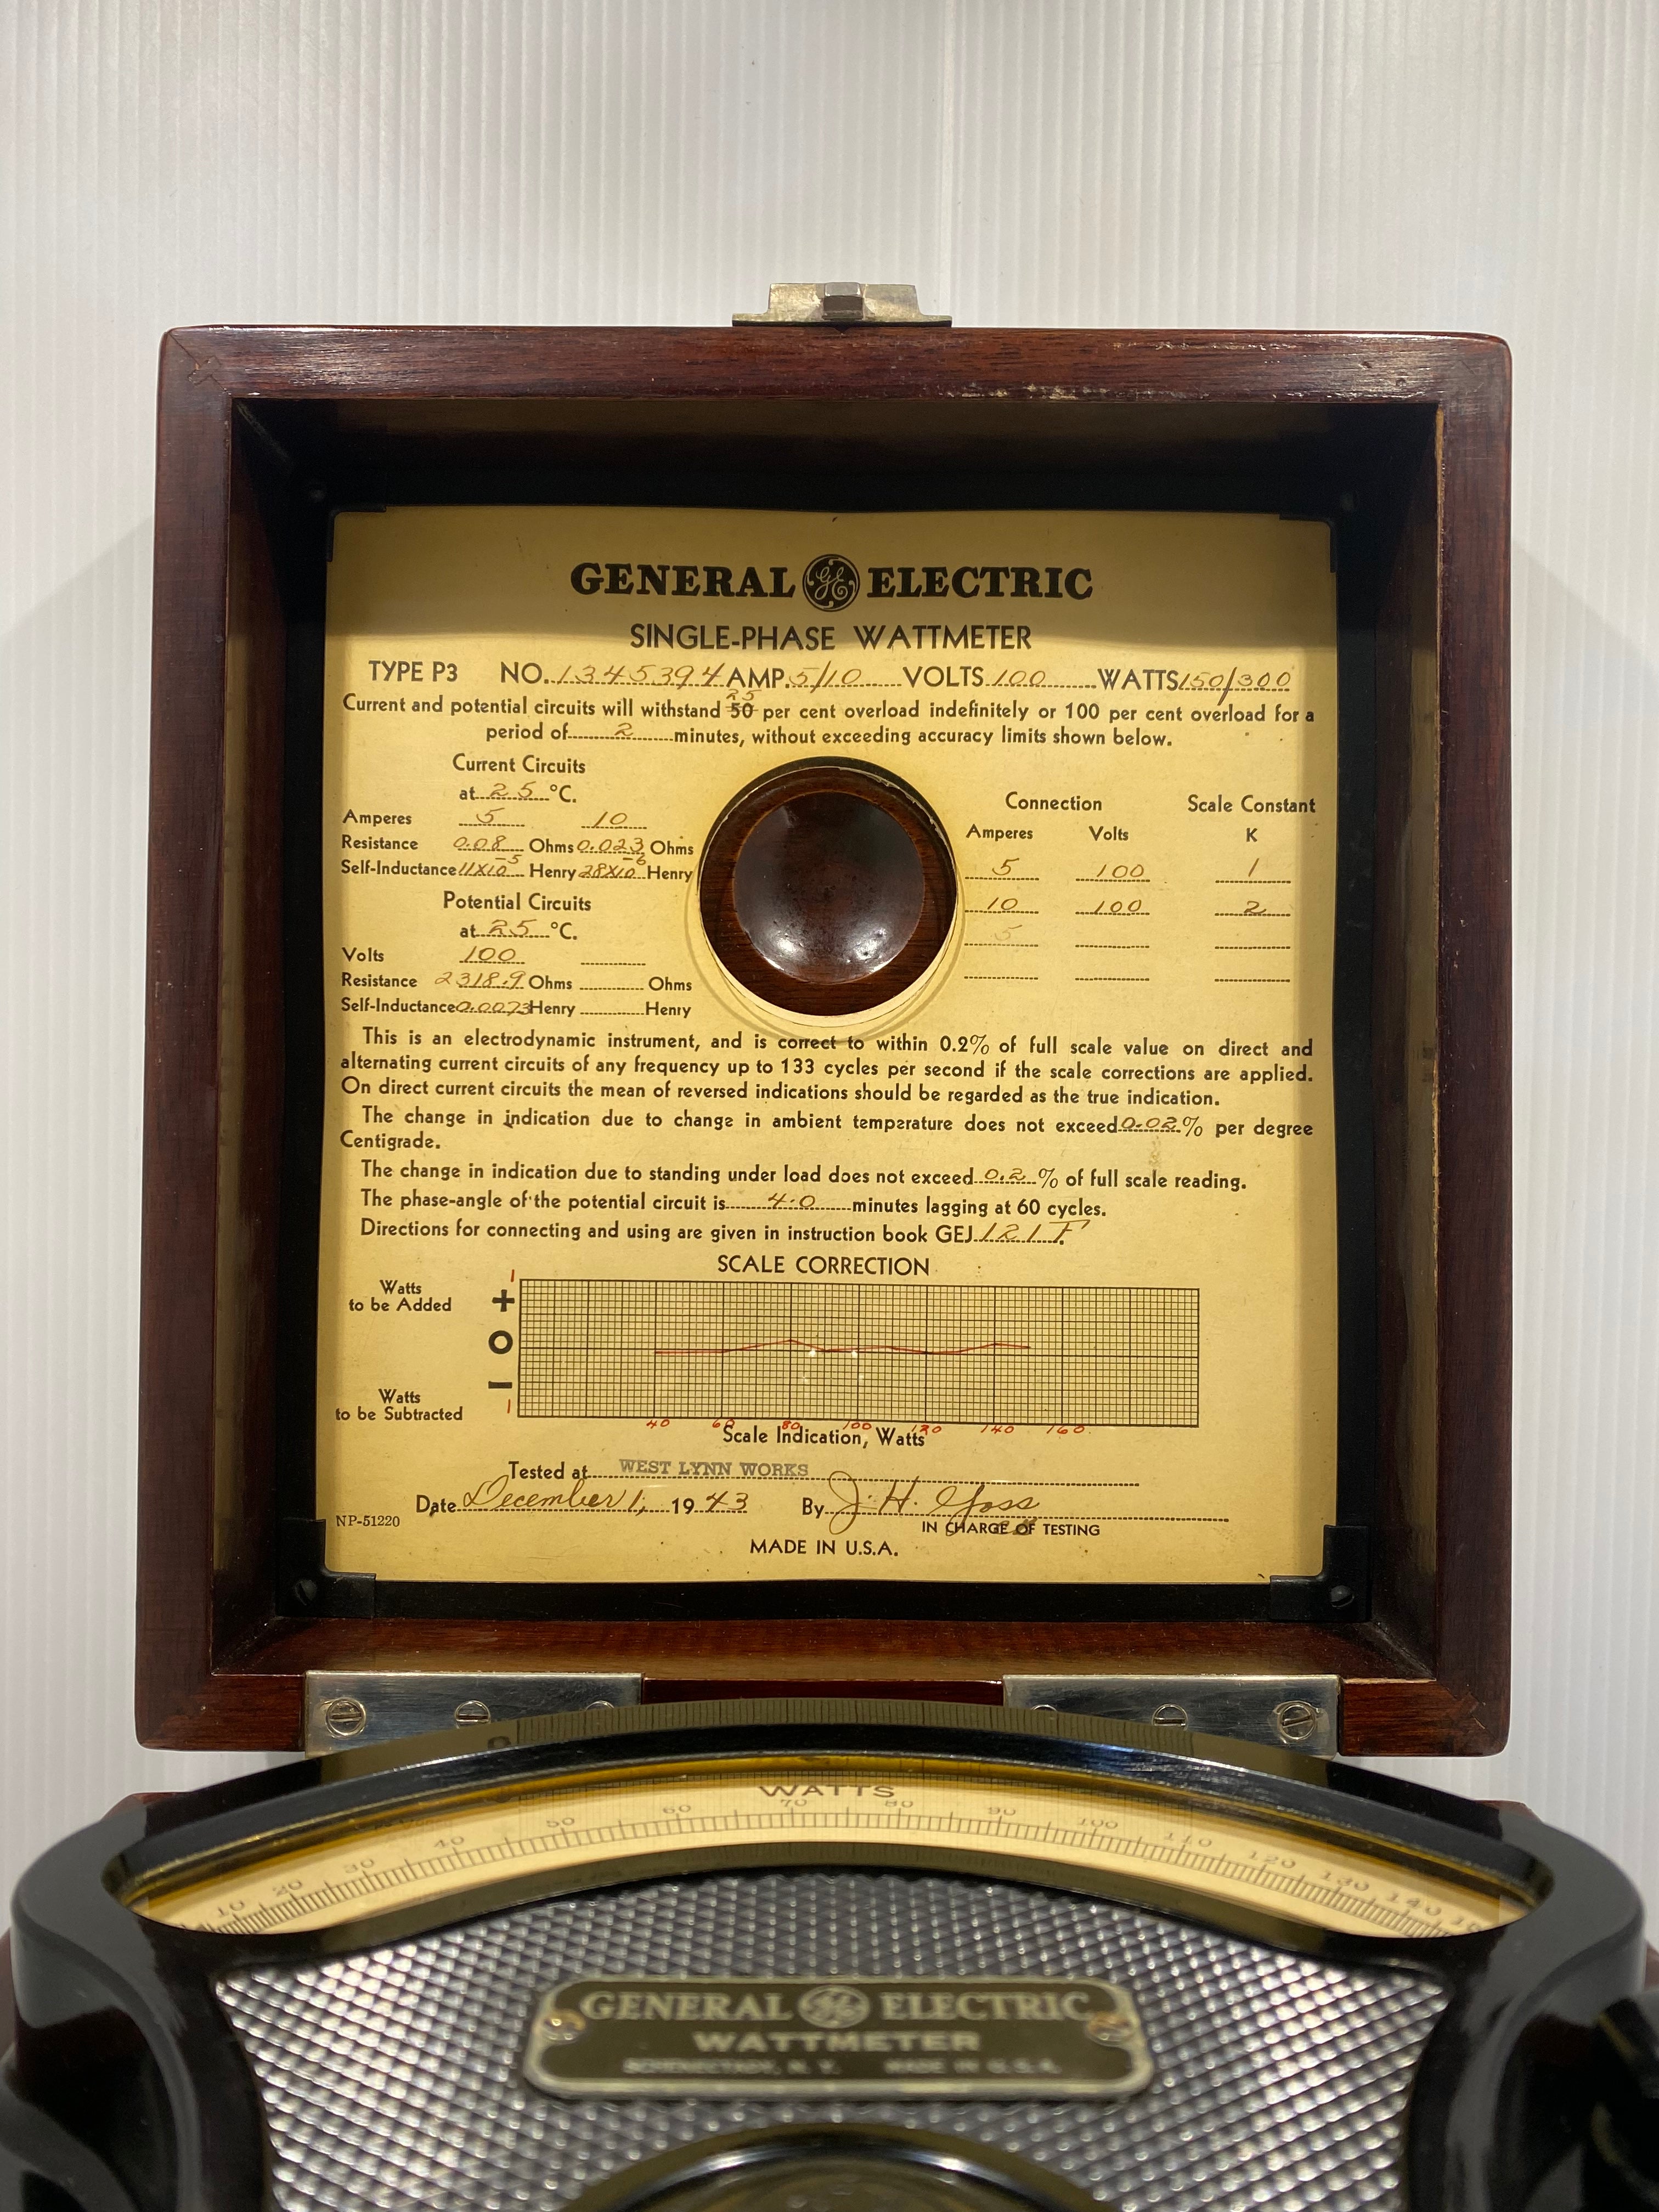 General Electric Single Phase Wattmeter, Type P-3 - 1930-40s.